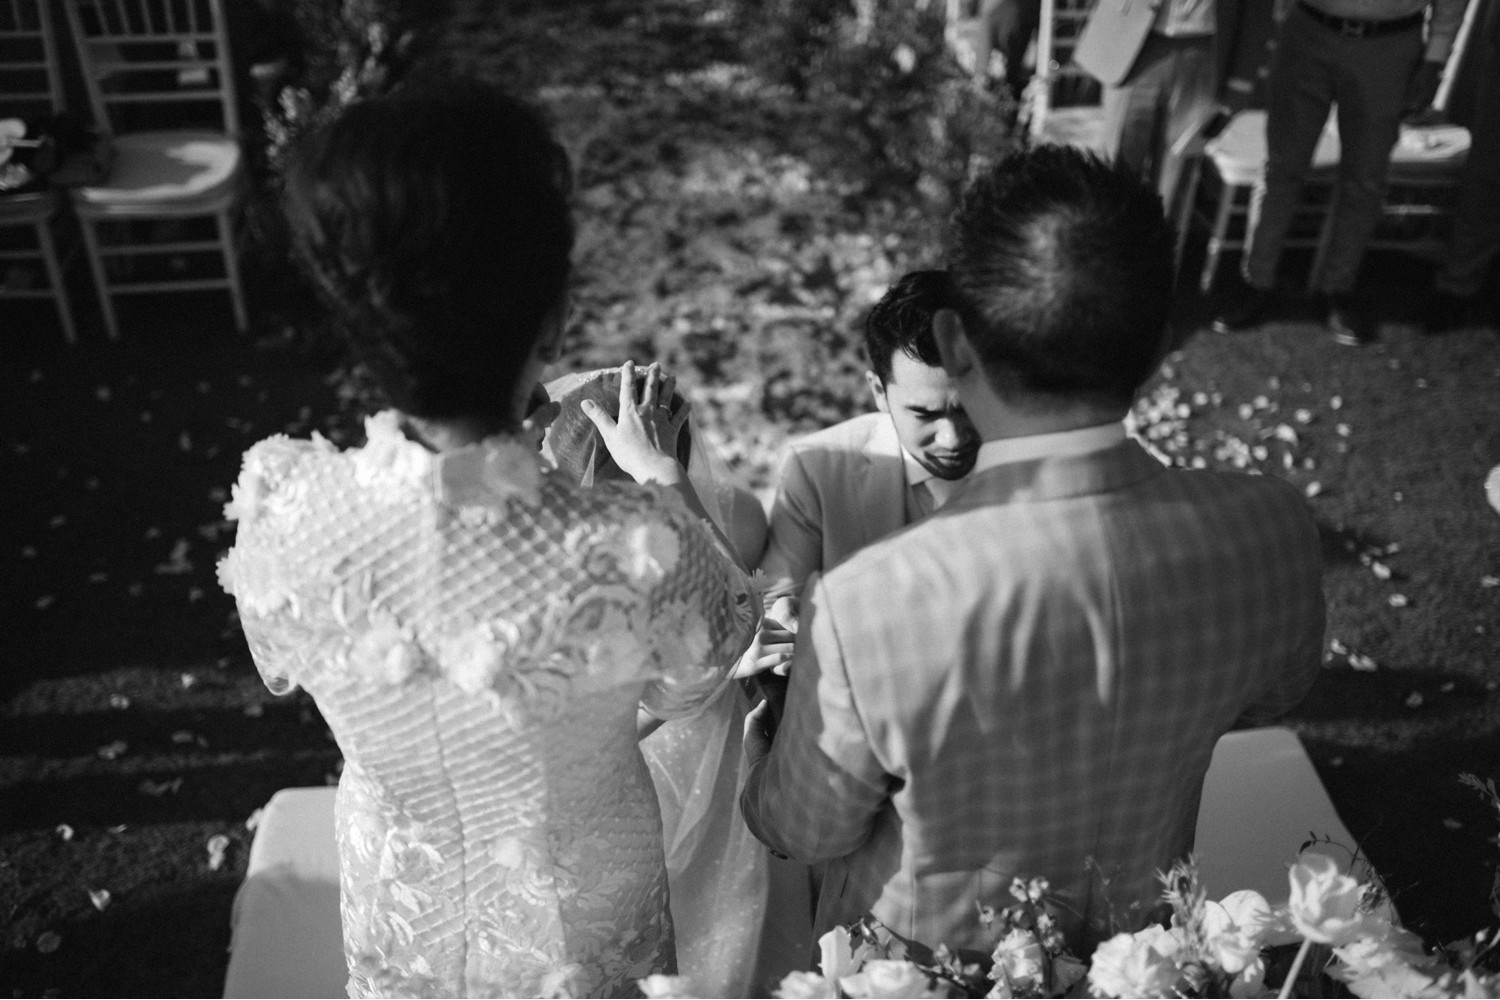 raymond stevany bali wedding khayangan sapto djodjokartiko rose and willow carol kuntjoro photography-79.jpg